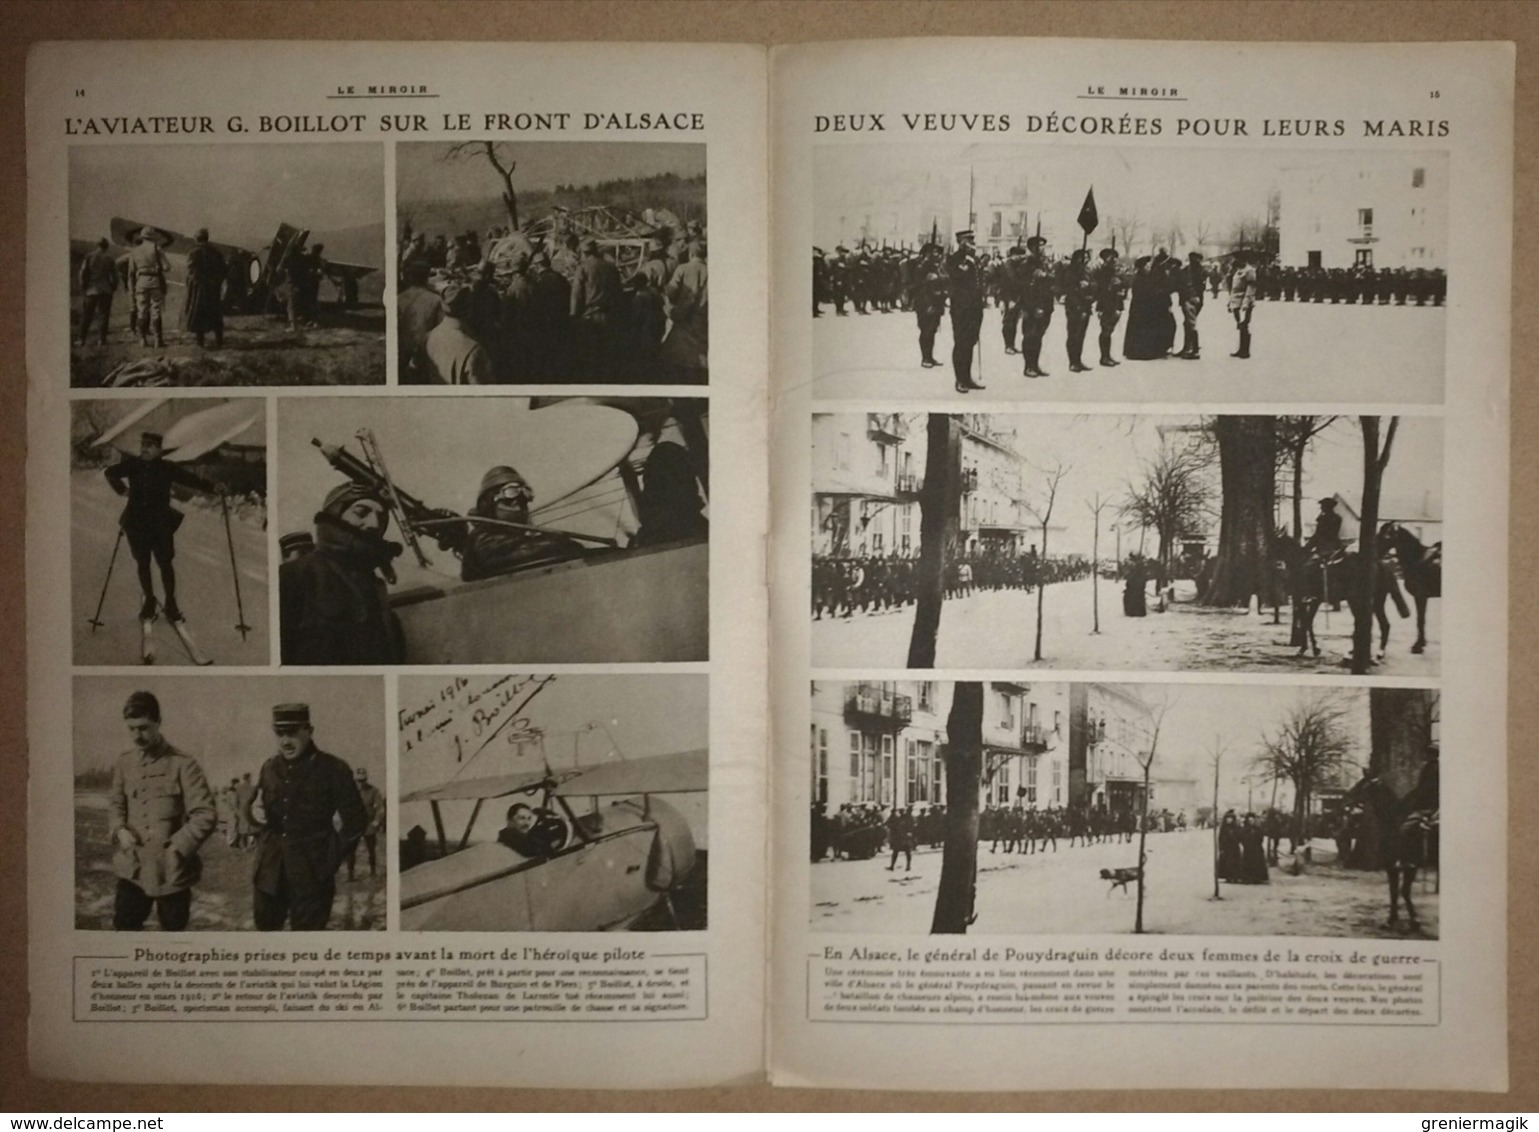 Le miroir du 4/06/1916 Pilote aviateur Boillot - Procès du traître Sir Roger Casement - Venizelos Grèce - Nungesser